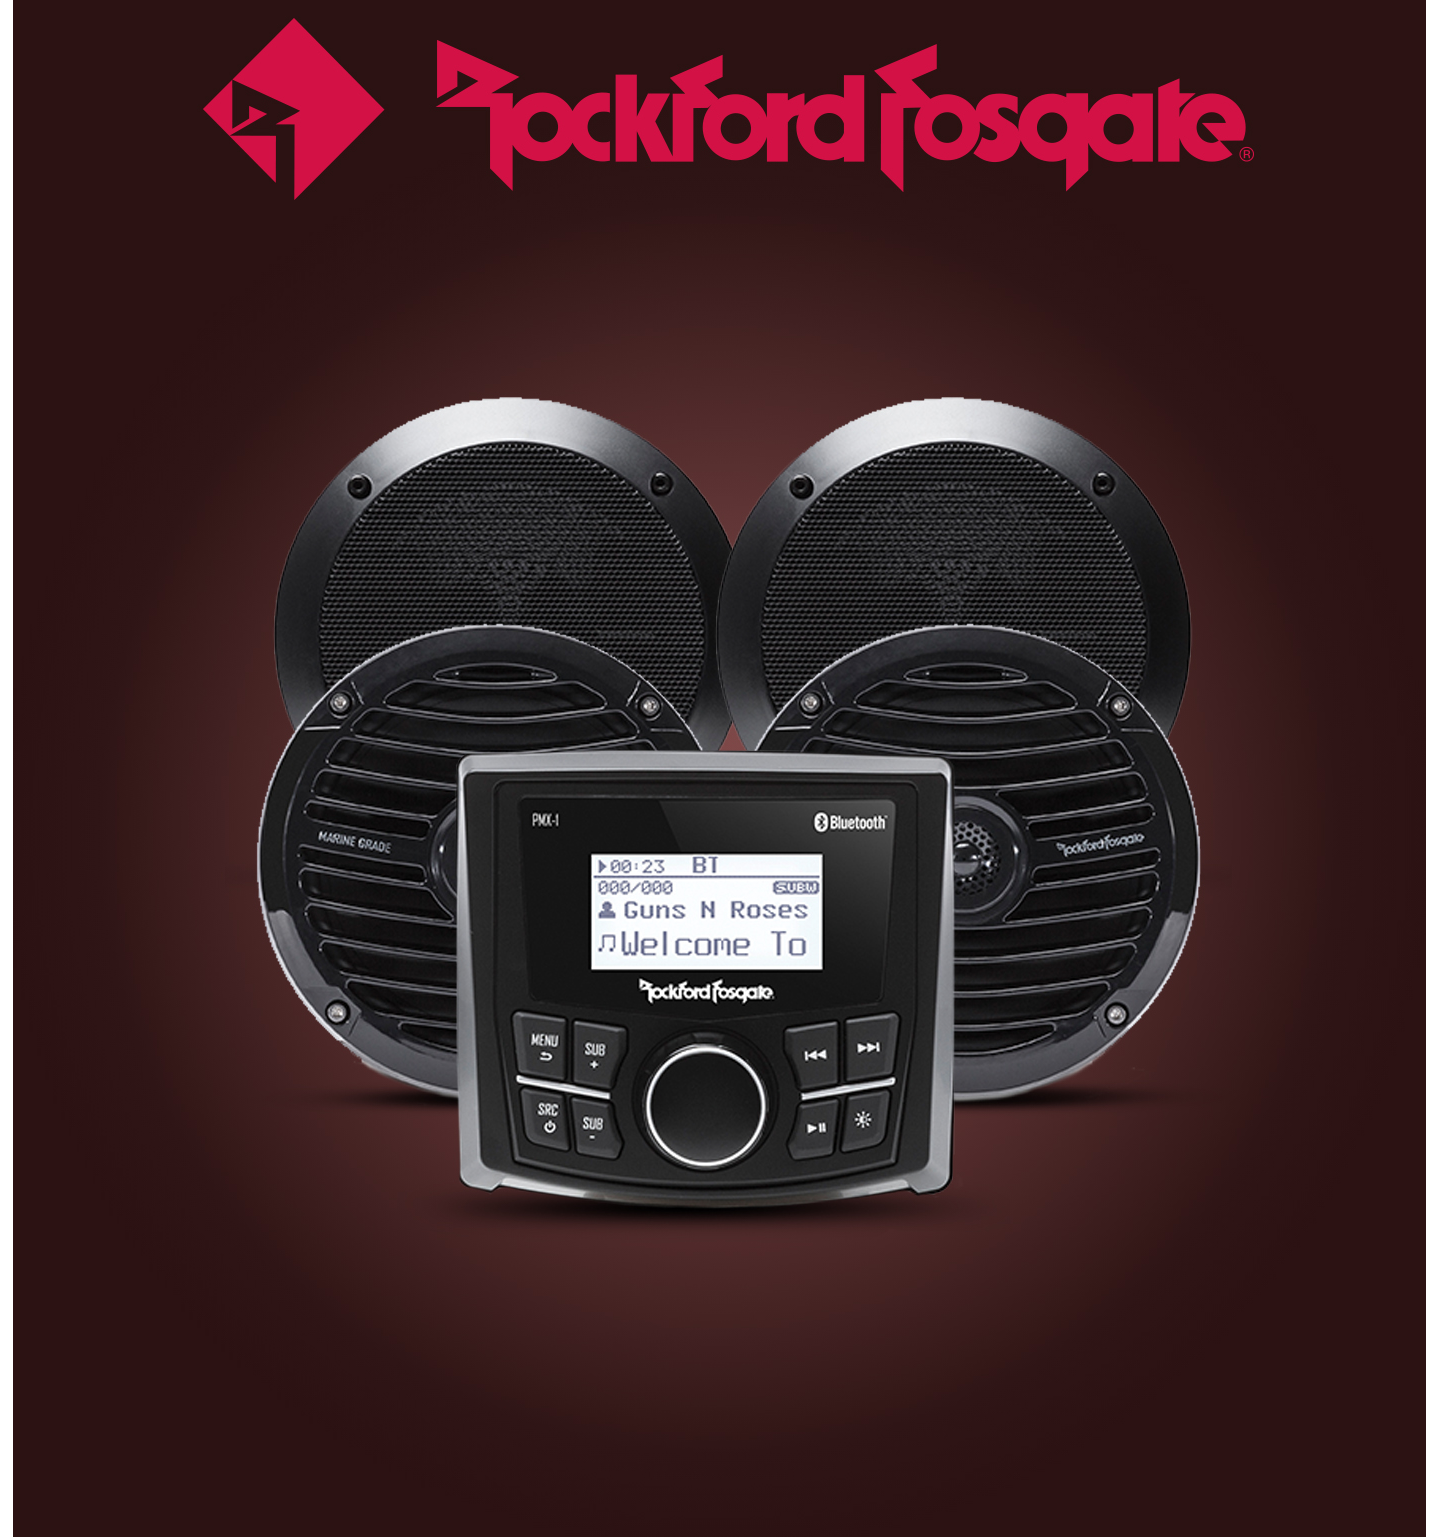 Rockford Fosgate Premium Audio